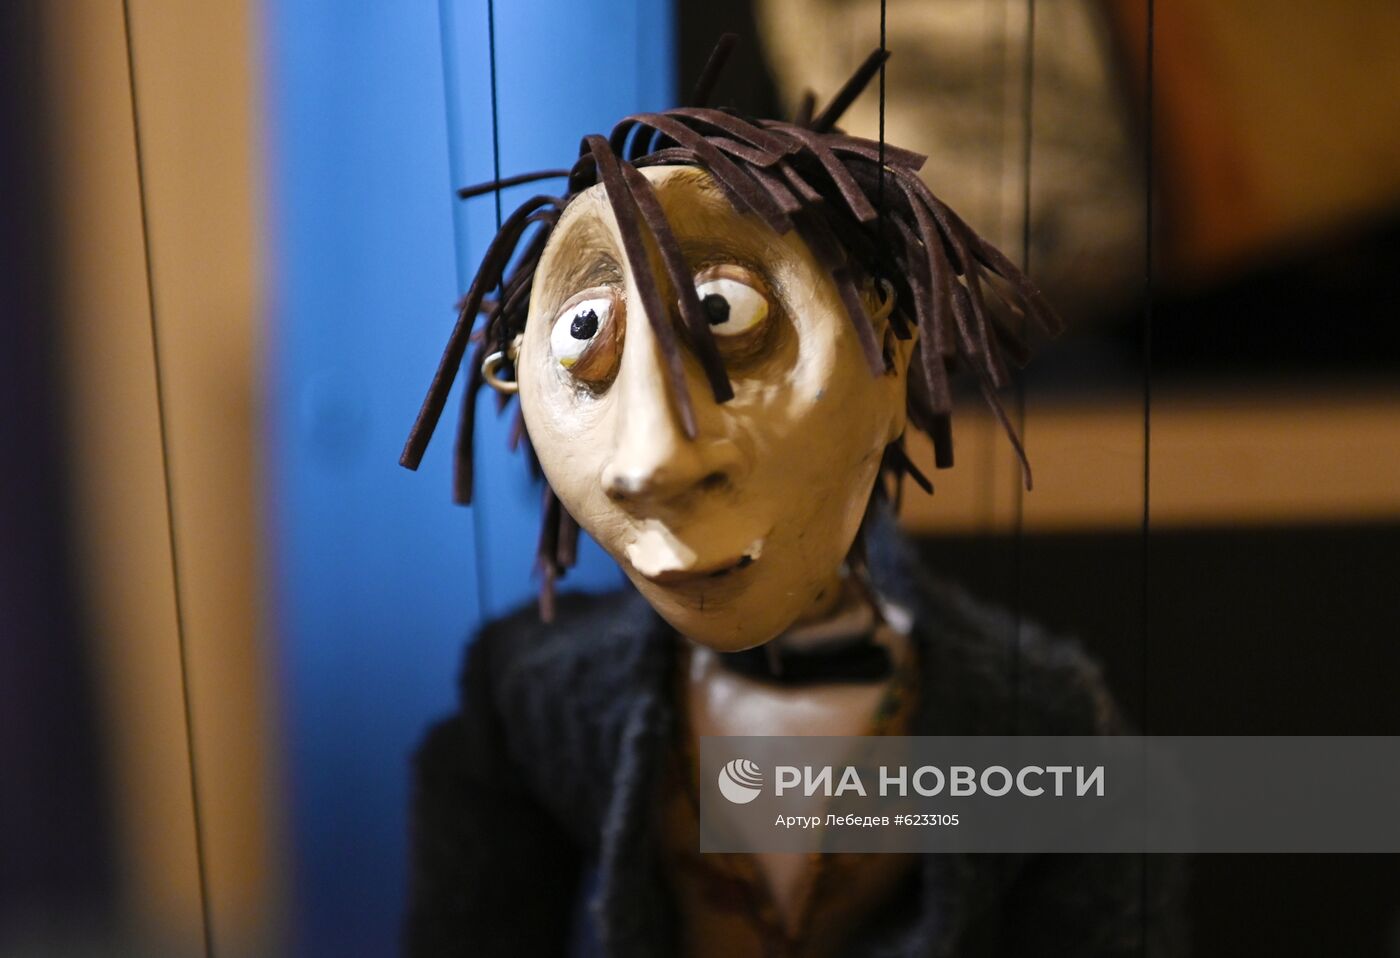 Онлайн-проект кукольного театра "Саквояж" 